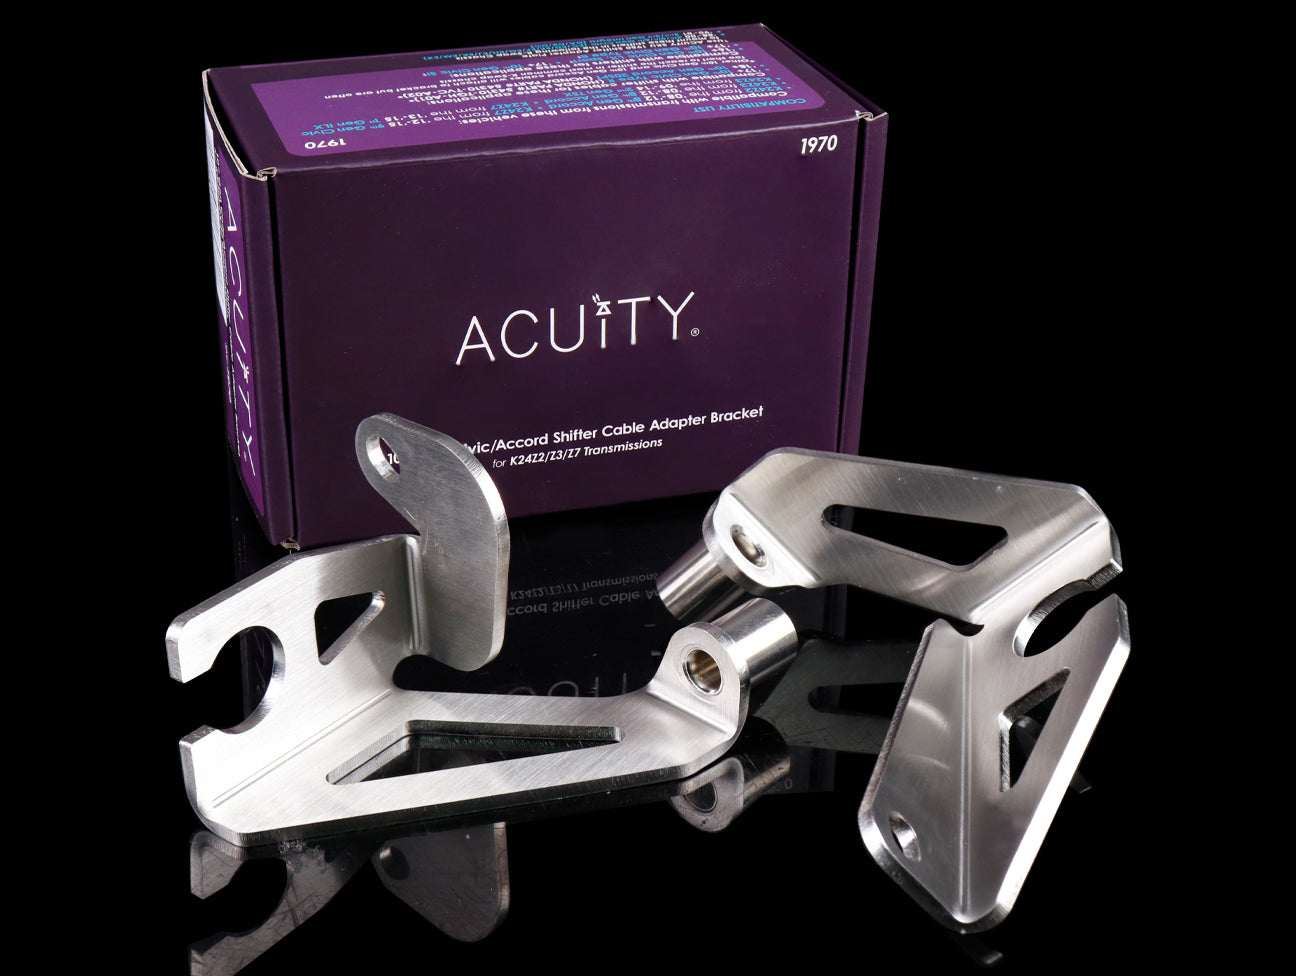 Acuity Shifter Cable Adapter Bracket - K24Z2/Z3/Z7